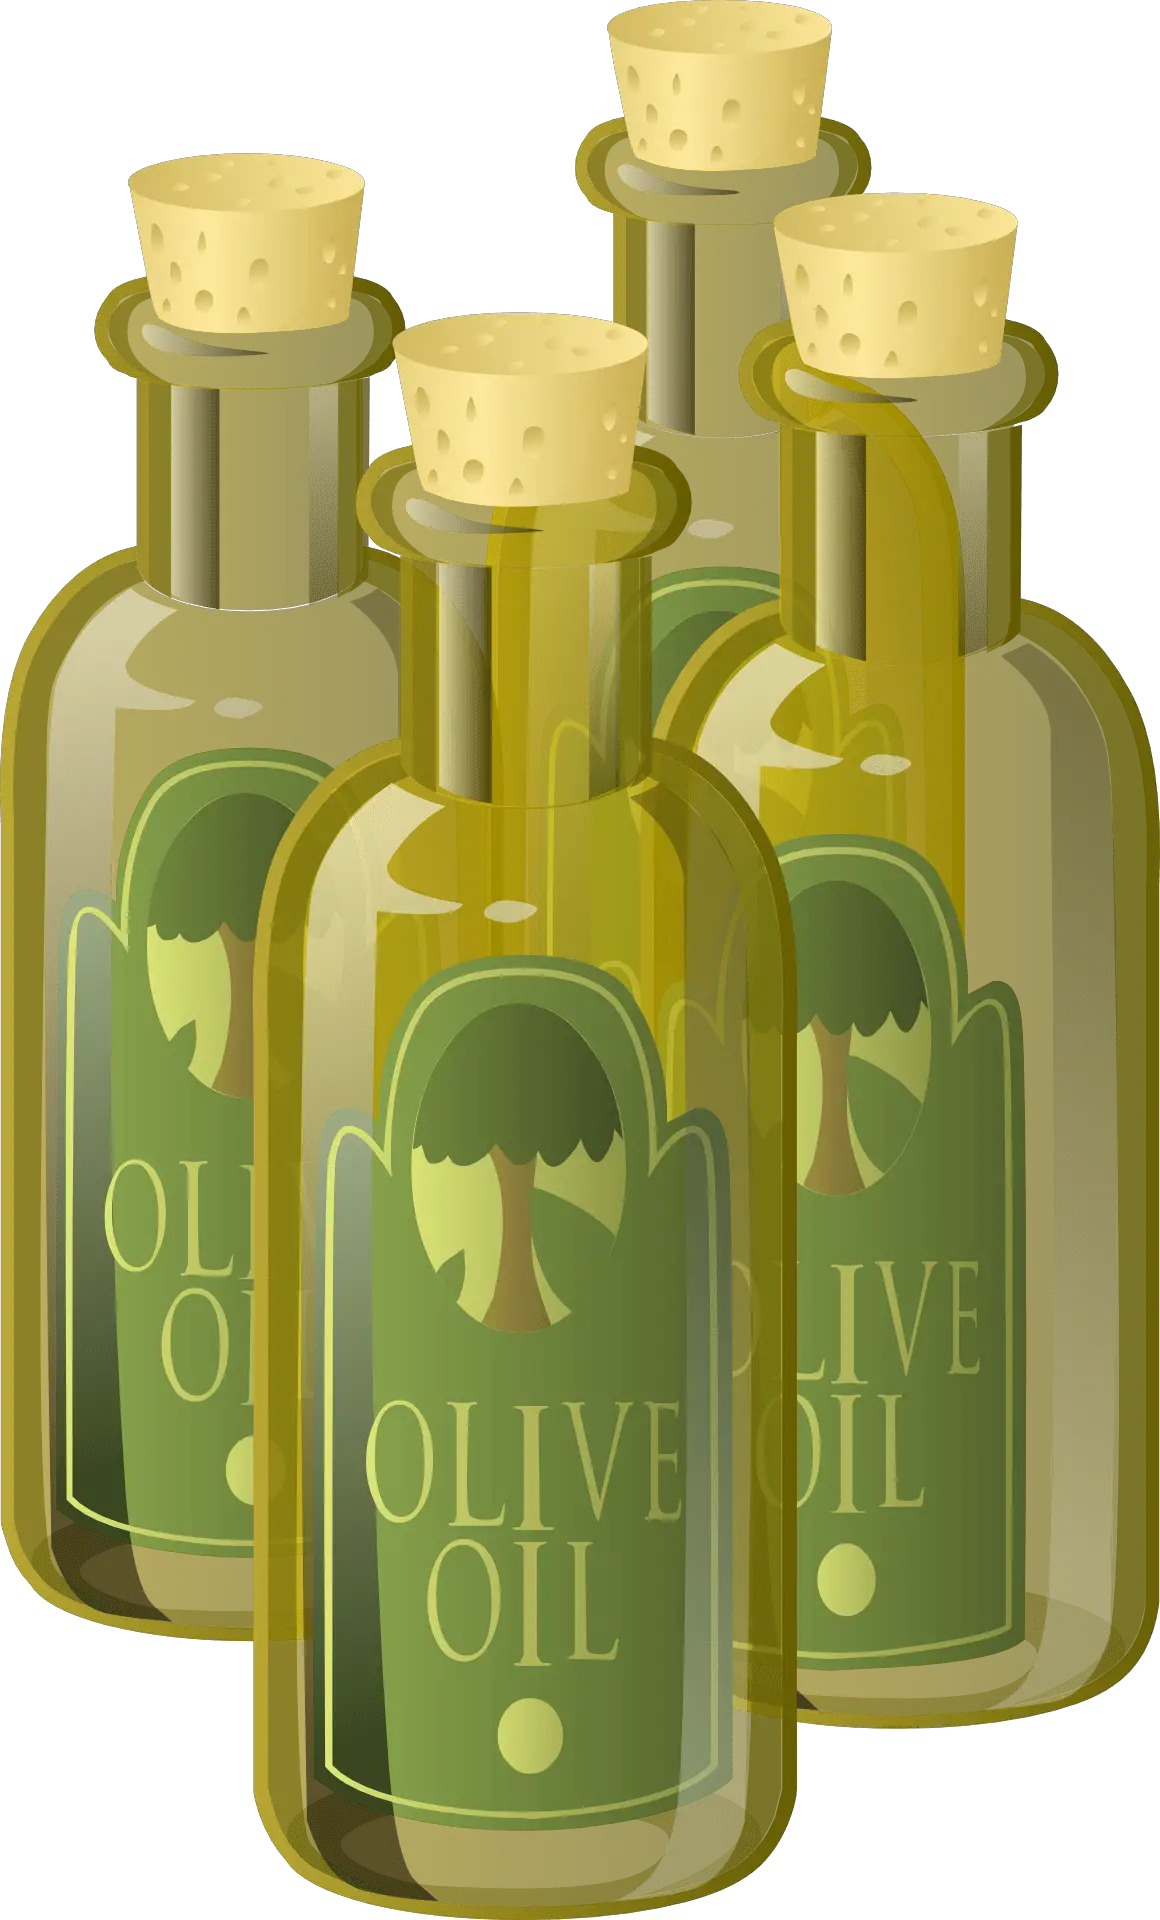 olive oil, bottles, oil